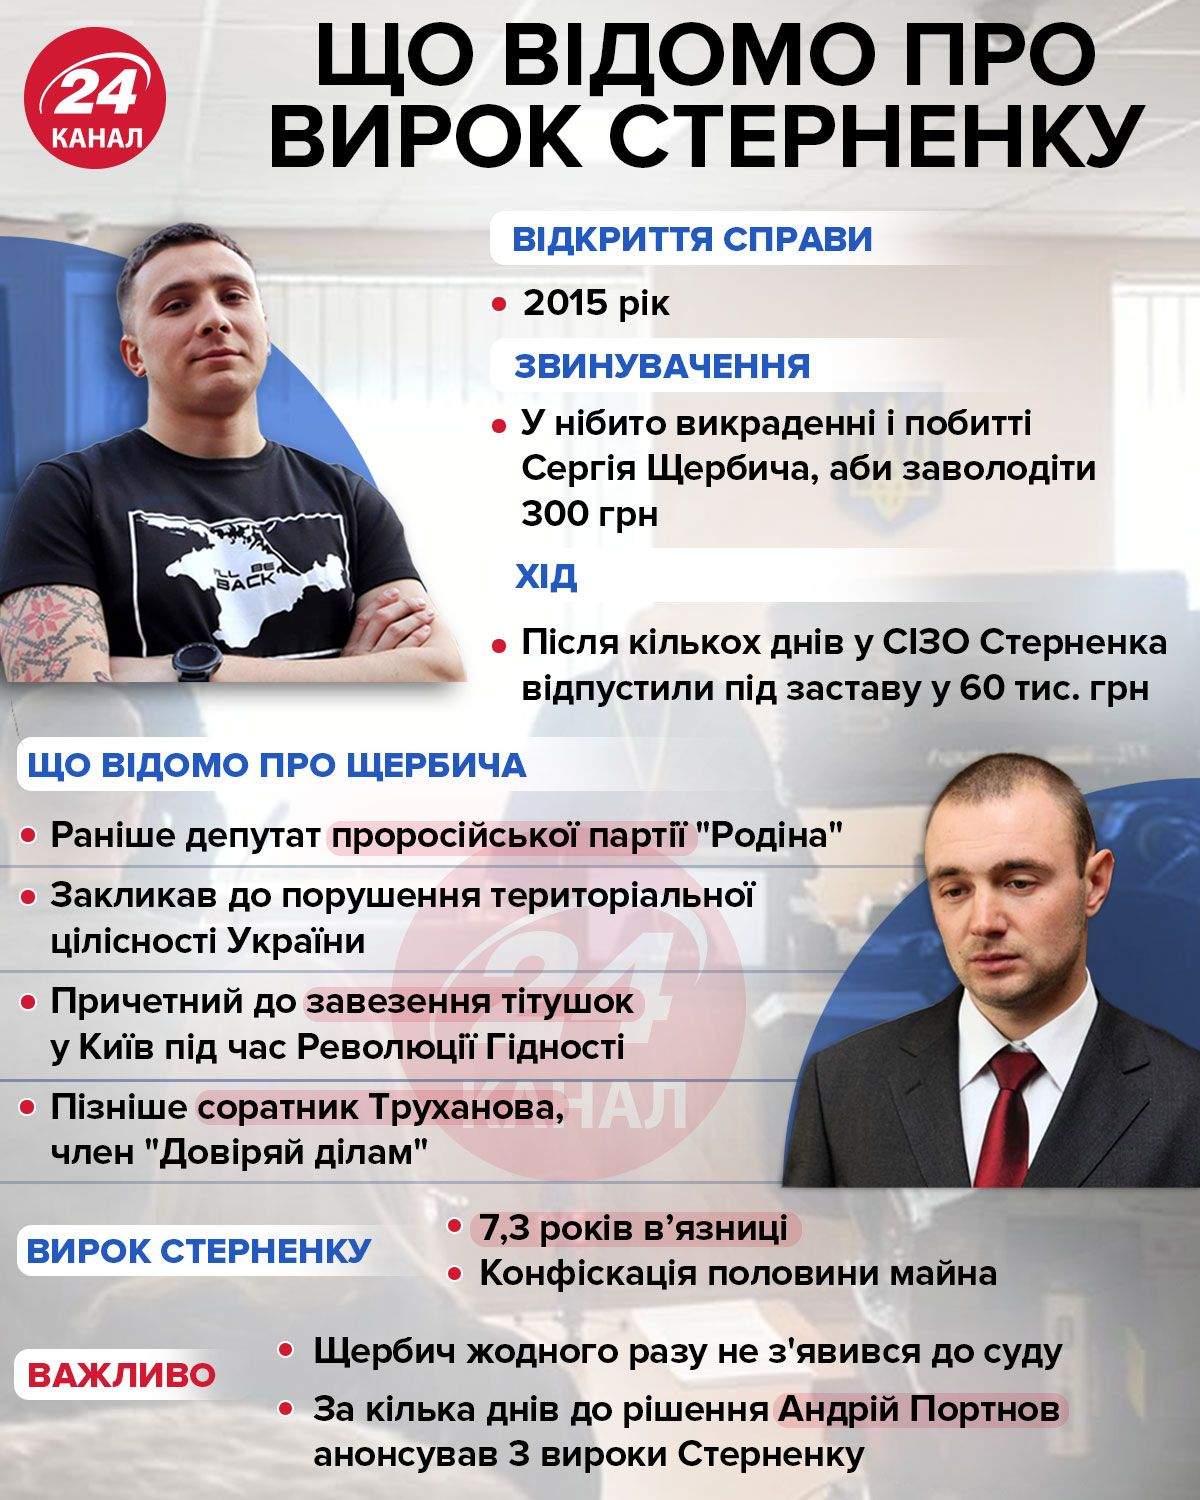 Что известно о приговоре Стерненку / Инфографика 24 канала